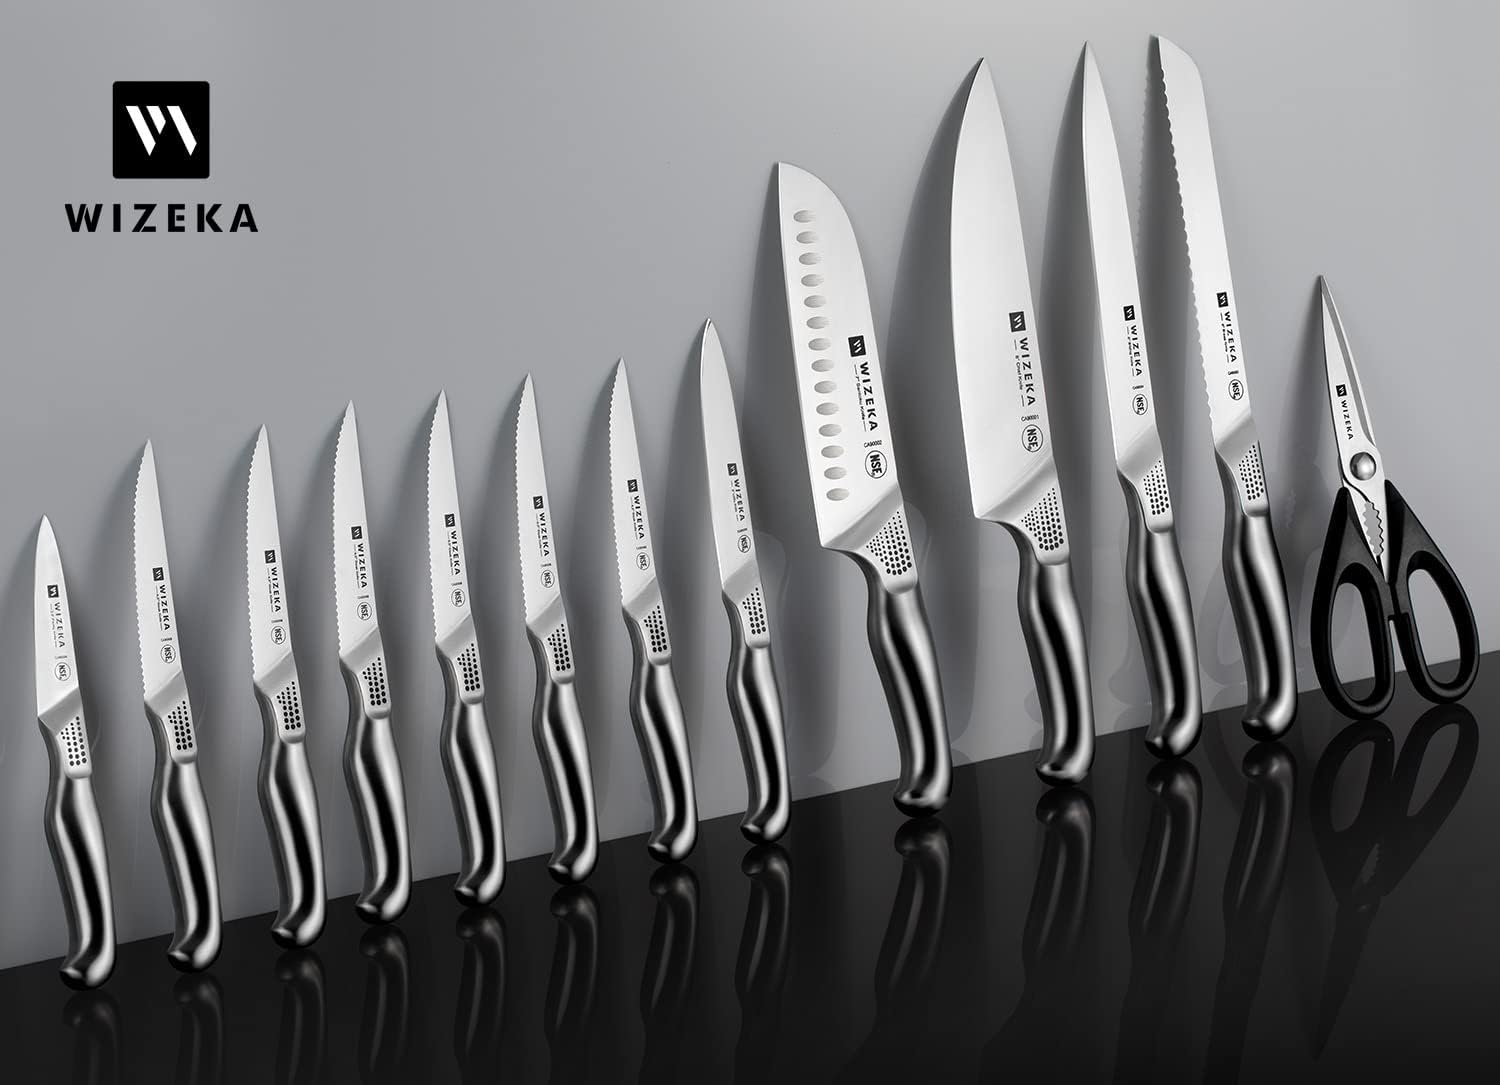 Emojoy 15Pcs Kitchen Knife Set with Block and Built-in Sharpener, Stainless  Steel Knife Block Set, Dishwasher Safe, Black